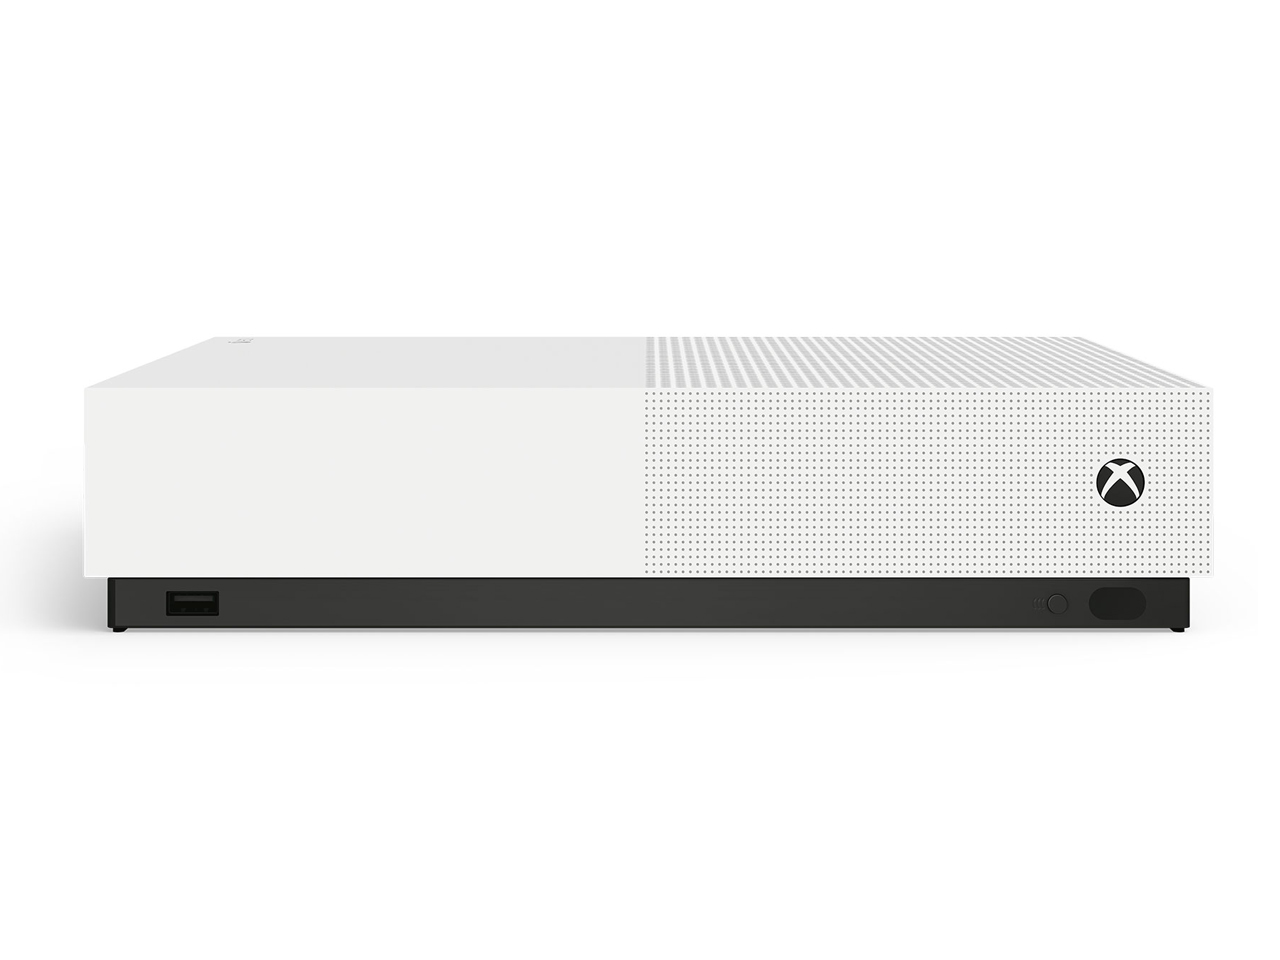 Xbox One S All Digital Edition [1TB]